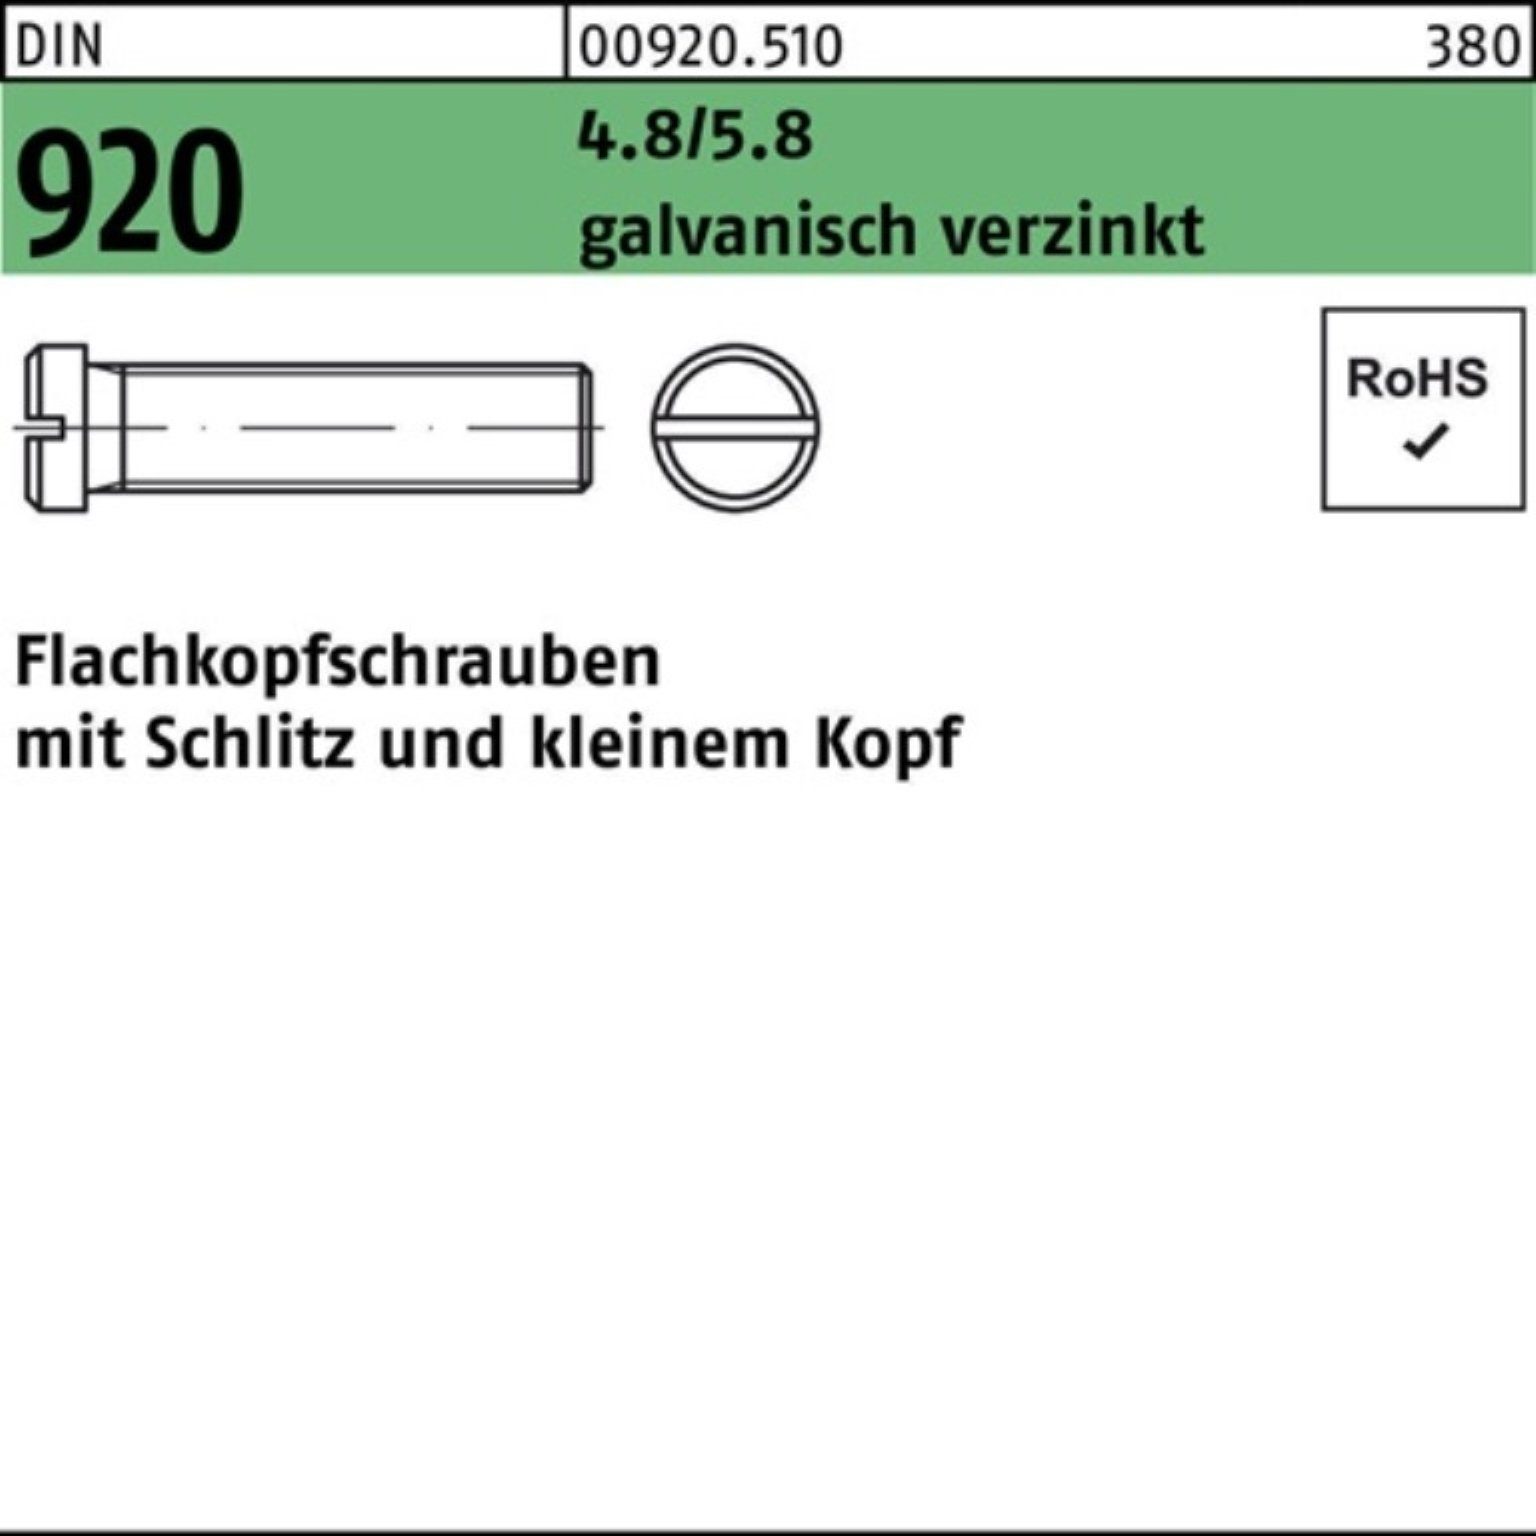 Reyher Schraube 100er Pack Flachkopfschraube DIN 920 Schlitz M3x 5 4.8/5.8 galv.verz.